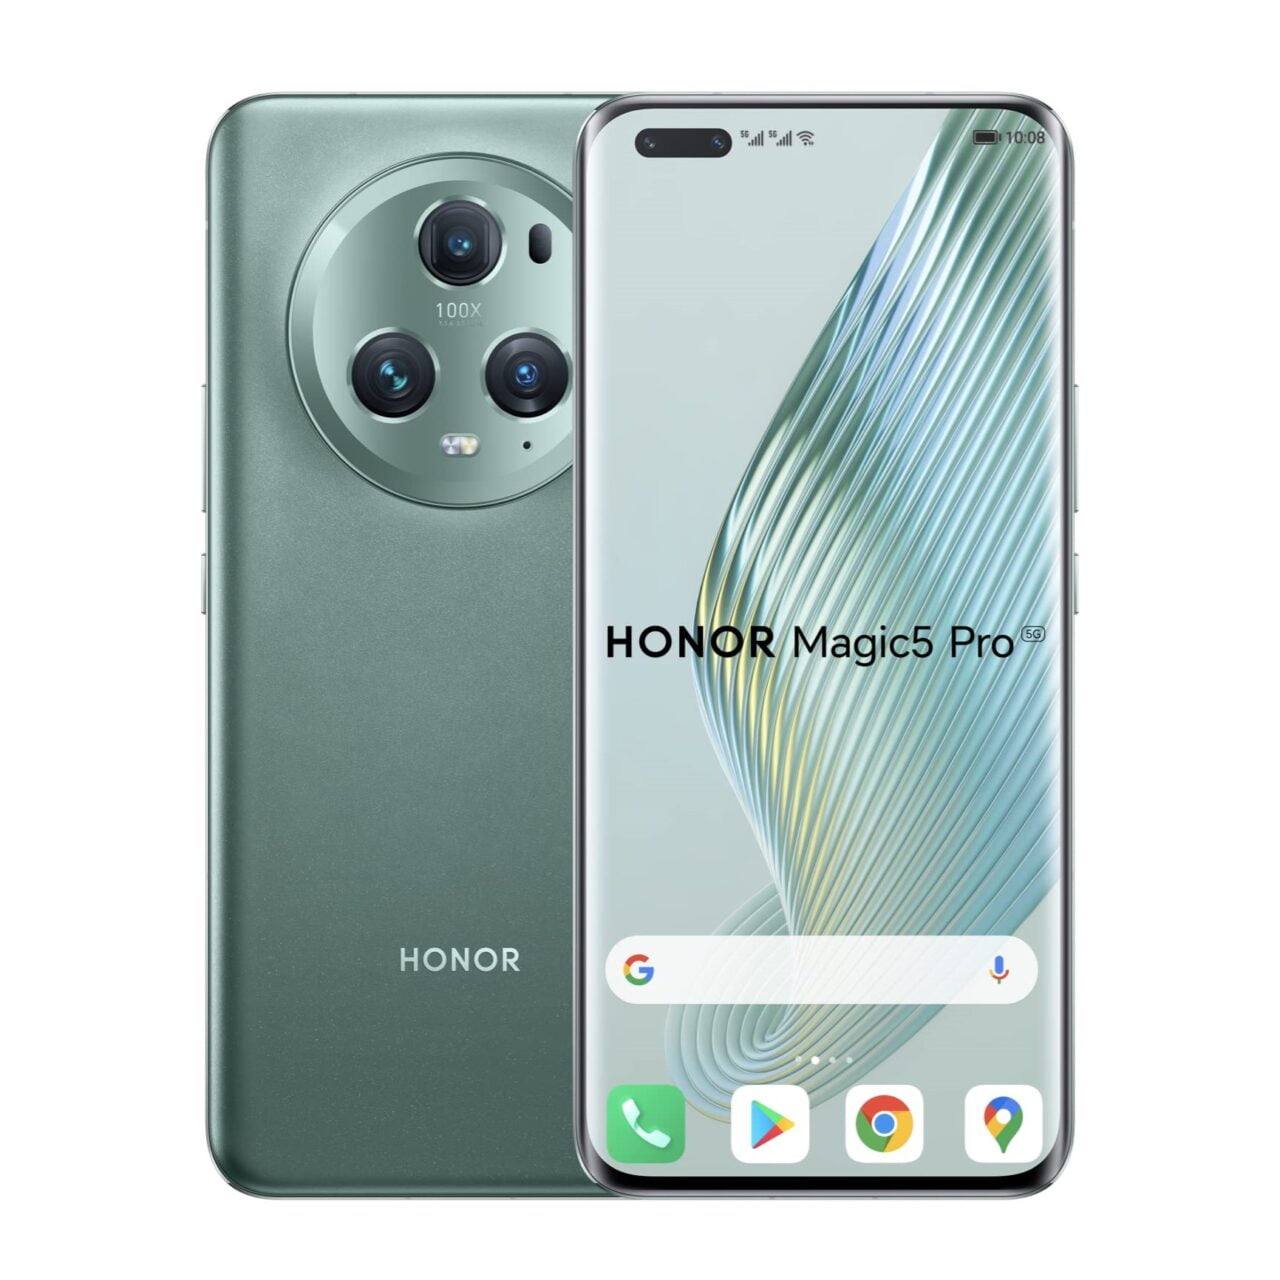 Smartfon Honor Magic5 Pro w kolorze zielonym, widok z przodu i z tyłu, z potrójnym układem aparatów i logotypem Honor na obudowie.